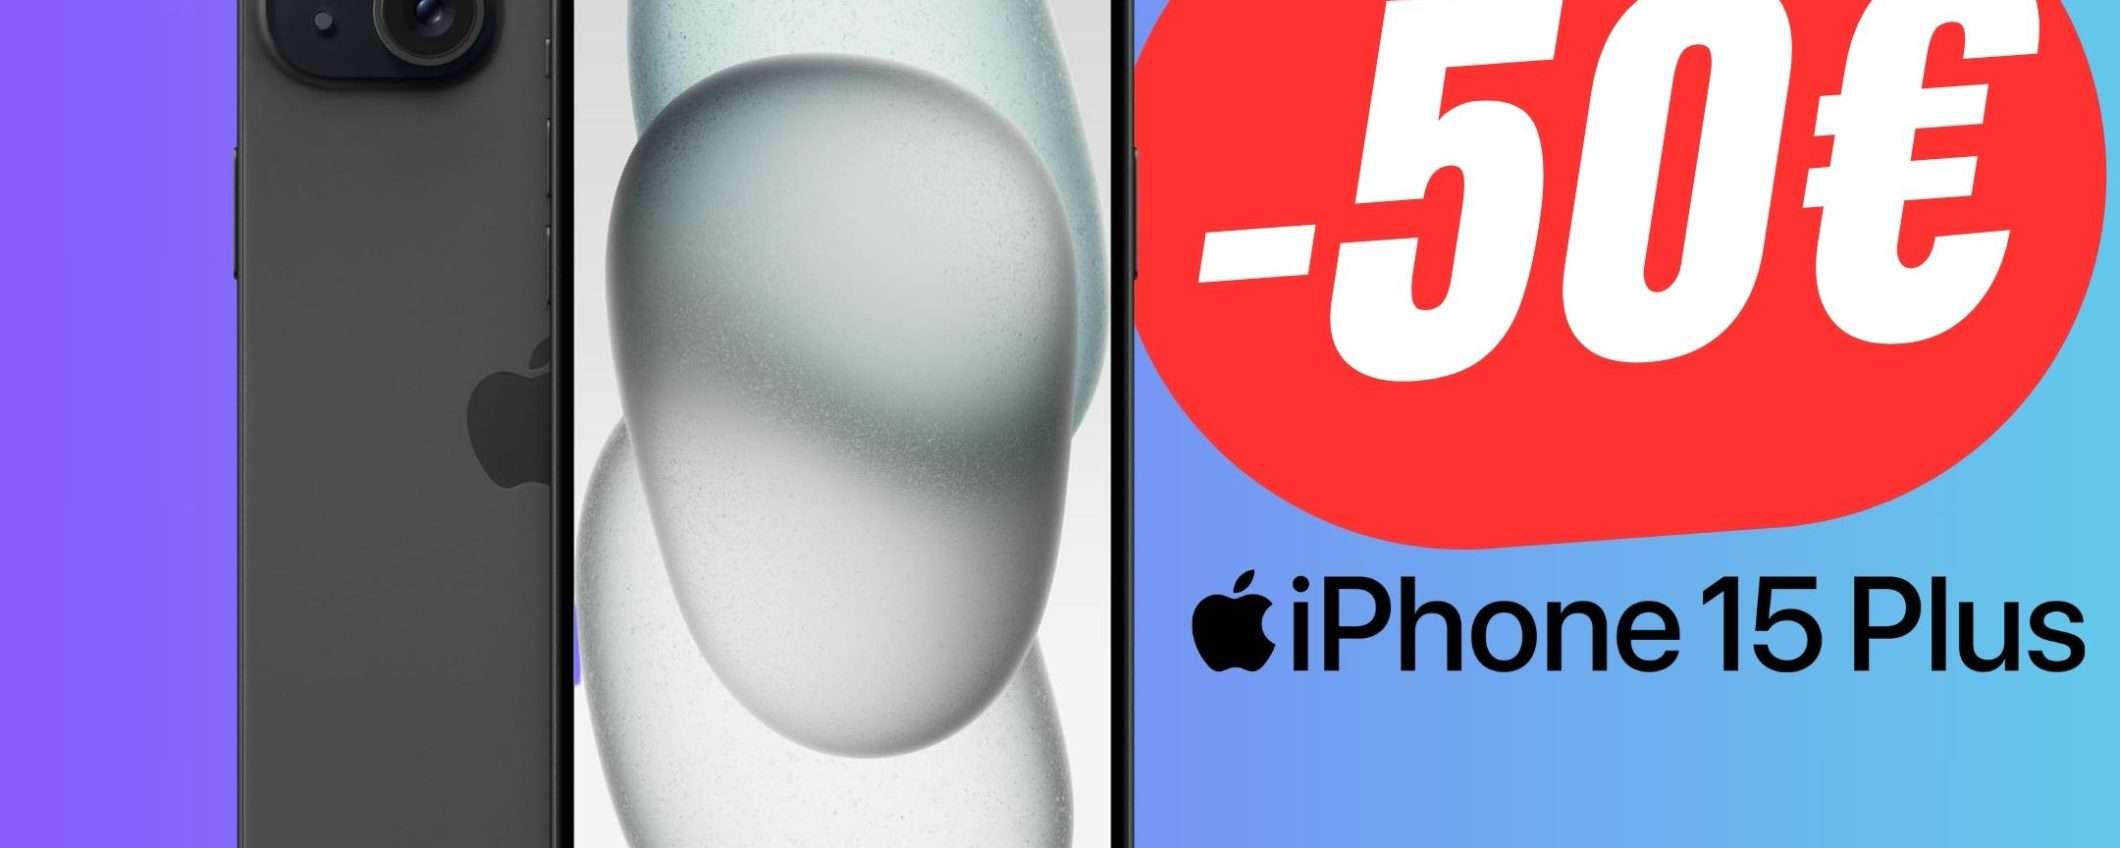 Apple iPhone 15 Plus è scontato su eBay!